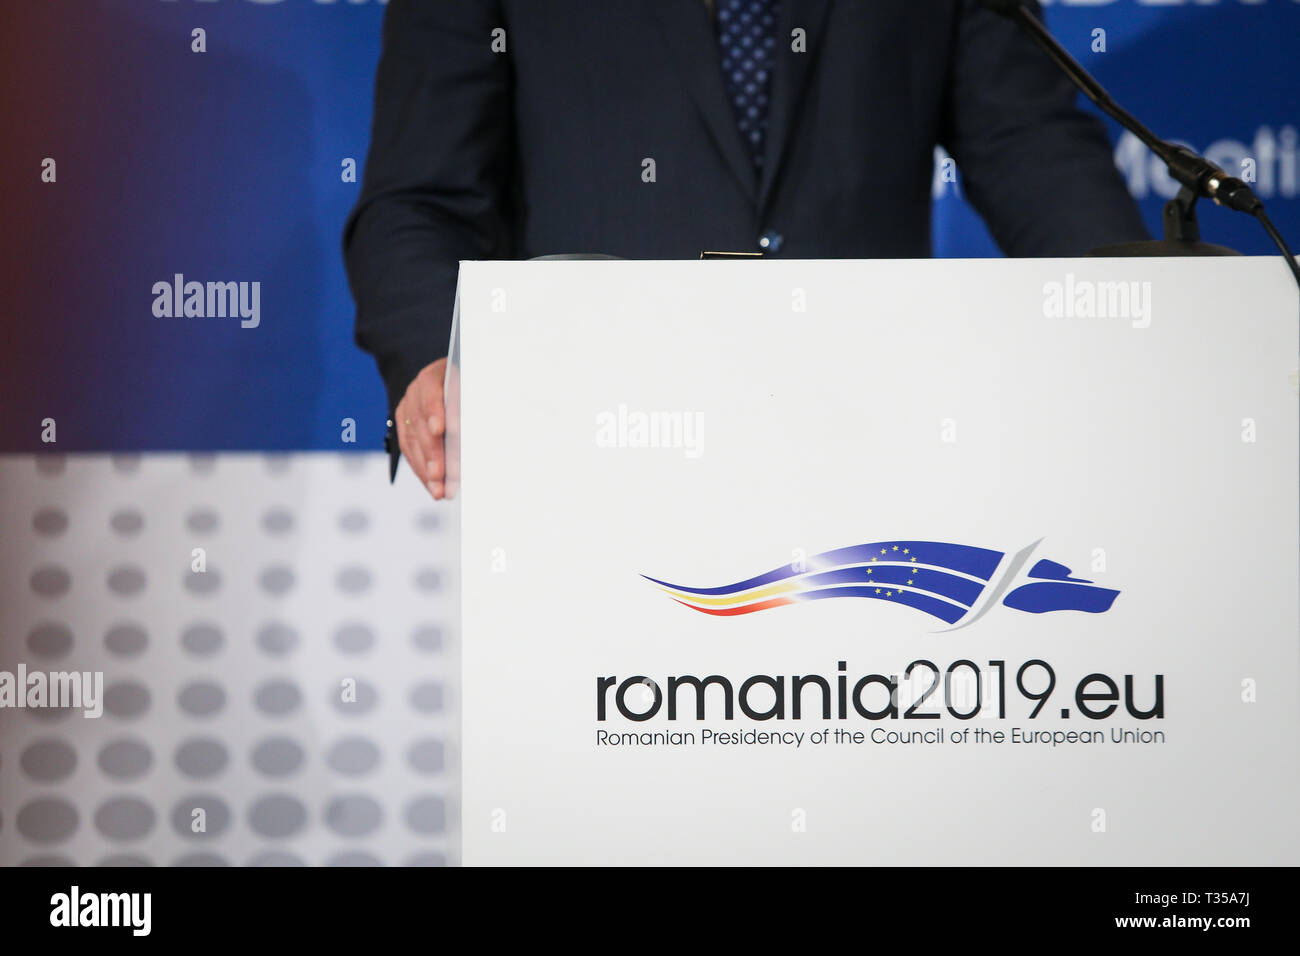 Bucarest, Rumania - Abril 6, 2019: el logotipo de la Presidencia rumana del Consejo de la Unión Europea durante una conferencia de prensa Foto de stock